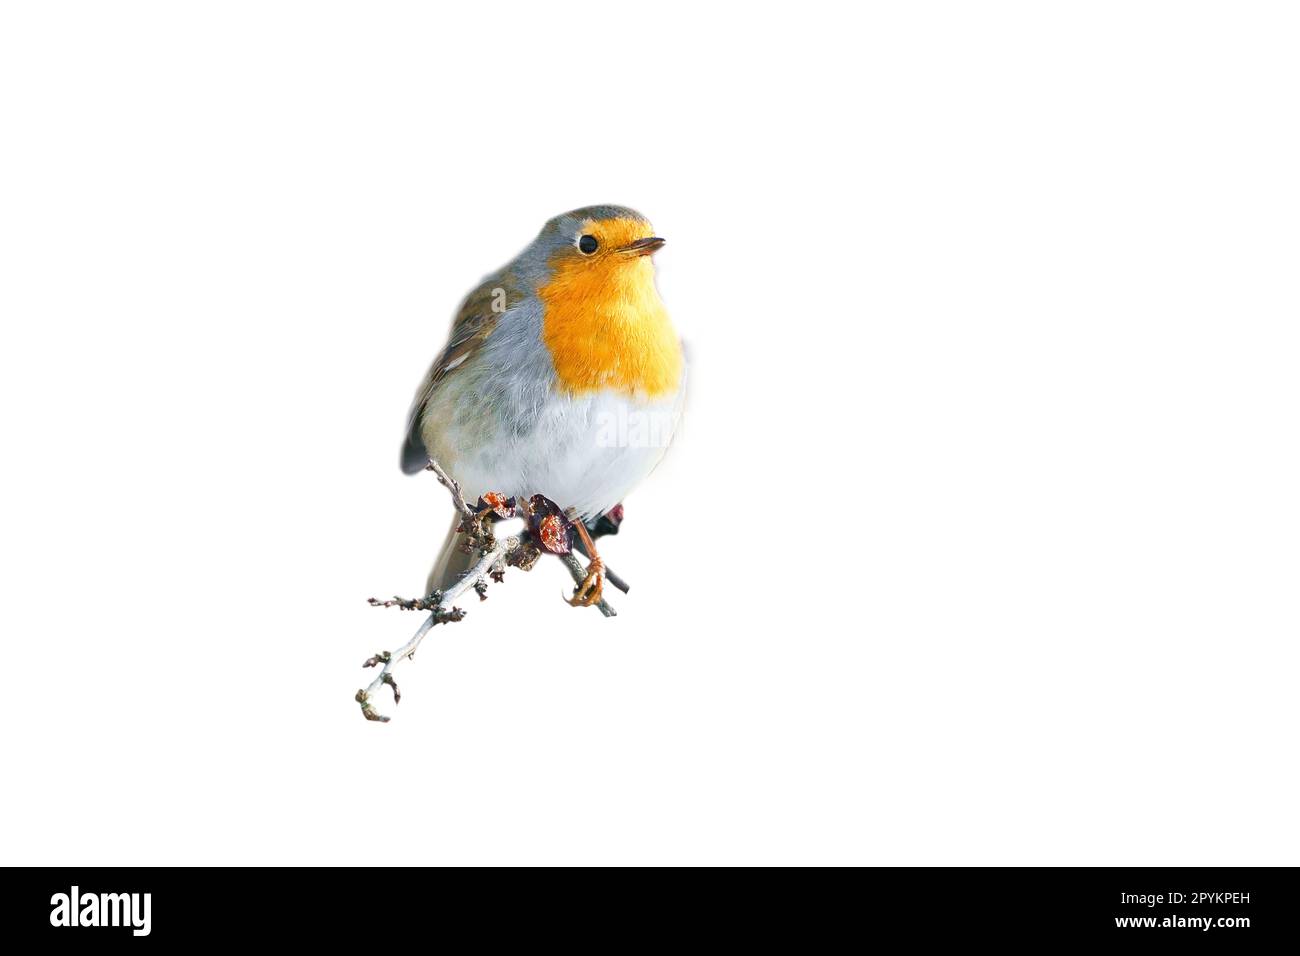 robin isoliert, zur Bearbeitung zugeschnitten. Songbird mit rot-weiß-orangefarbenem Gefieder. Vogel aus der Natur Stockfoto